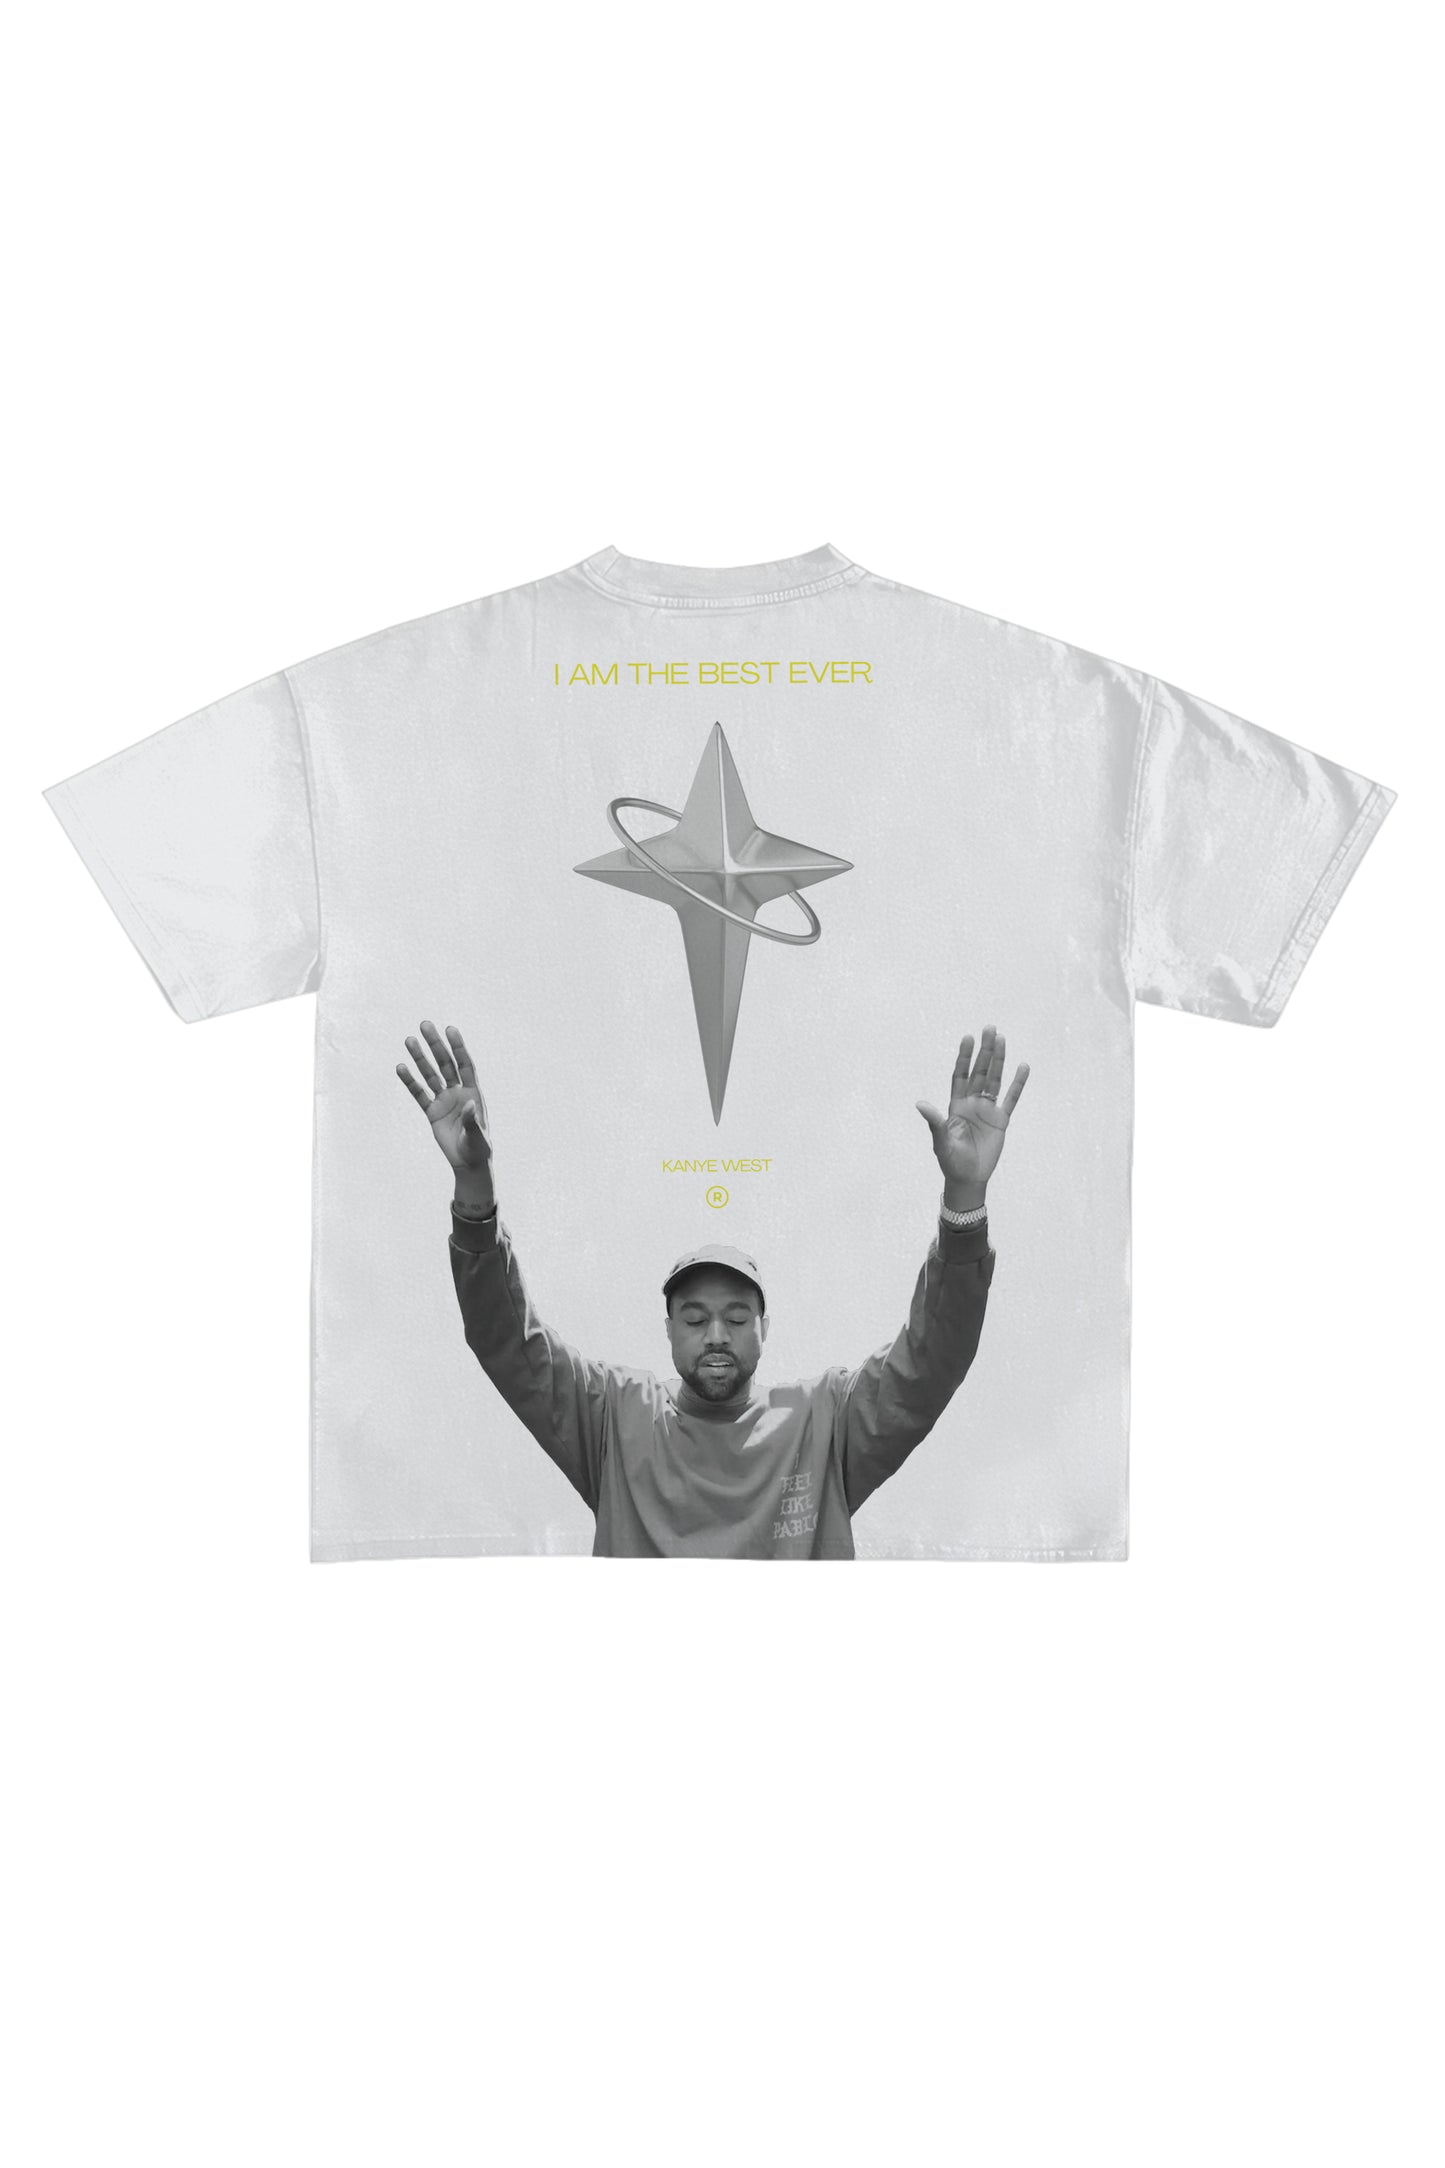 Kanye West Designed Oversized T-shirt